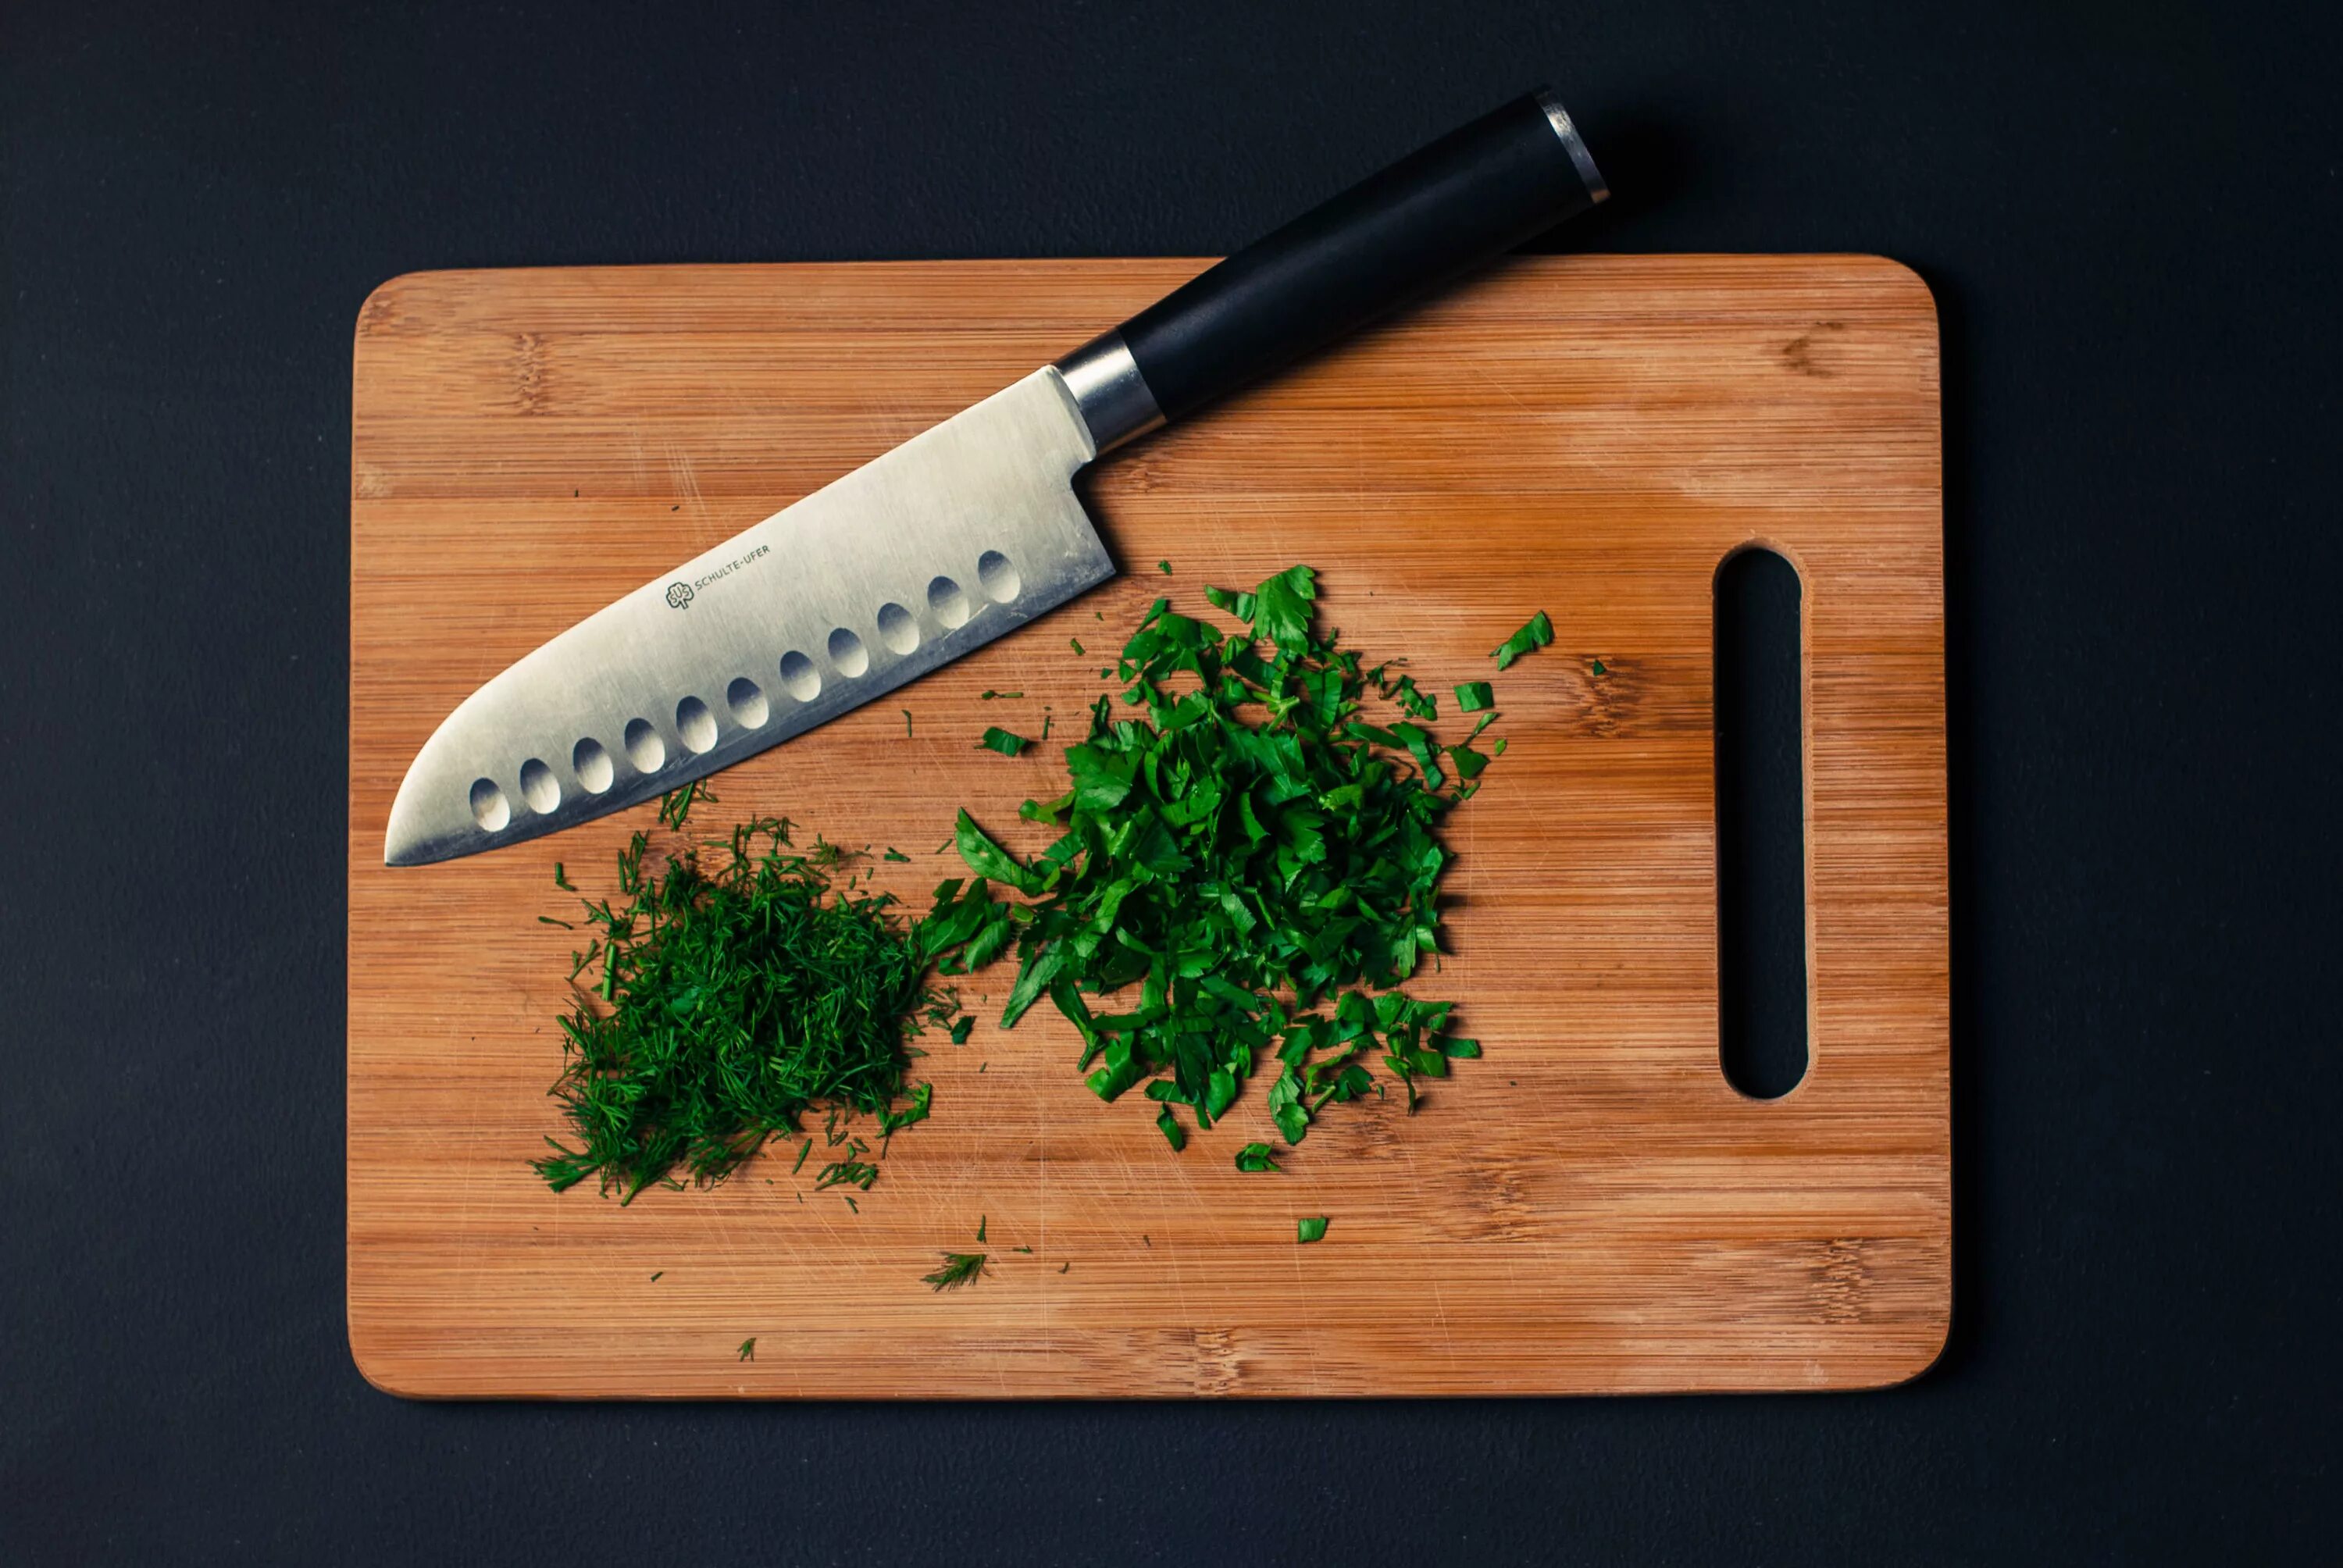 Разделоччная доска с ножо. Кухонный нож на доске. Разделочная доска с зеленью. Разделочная доска с ножом